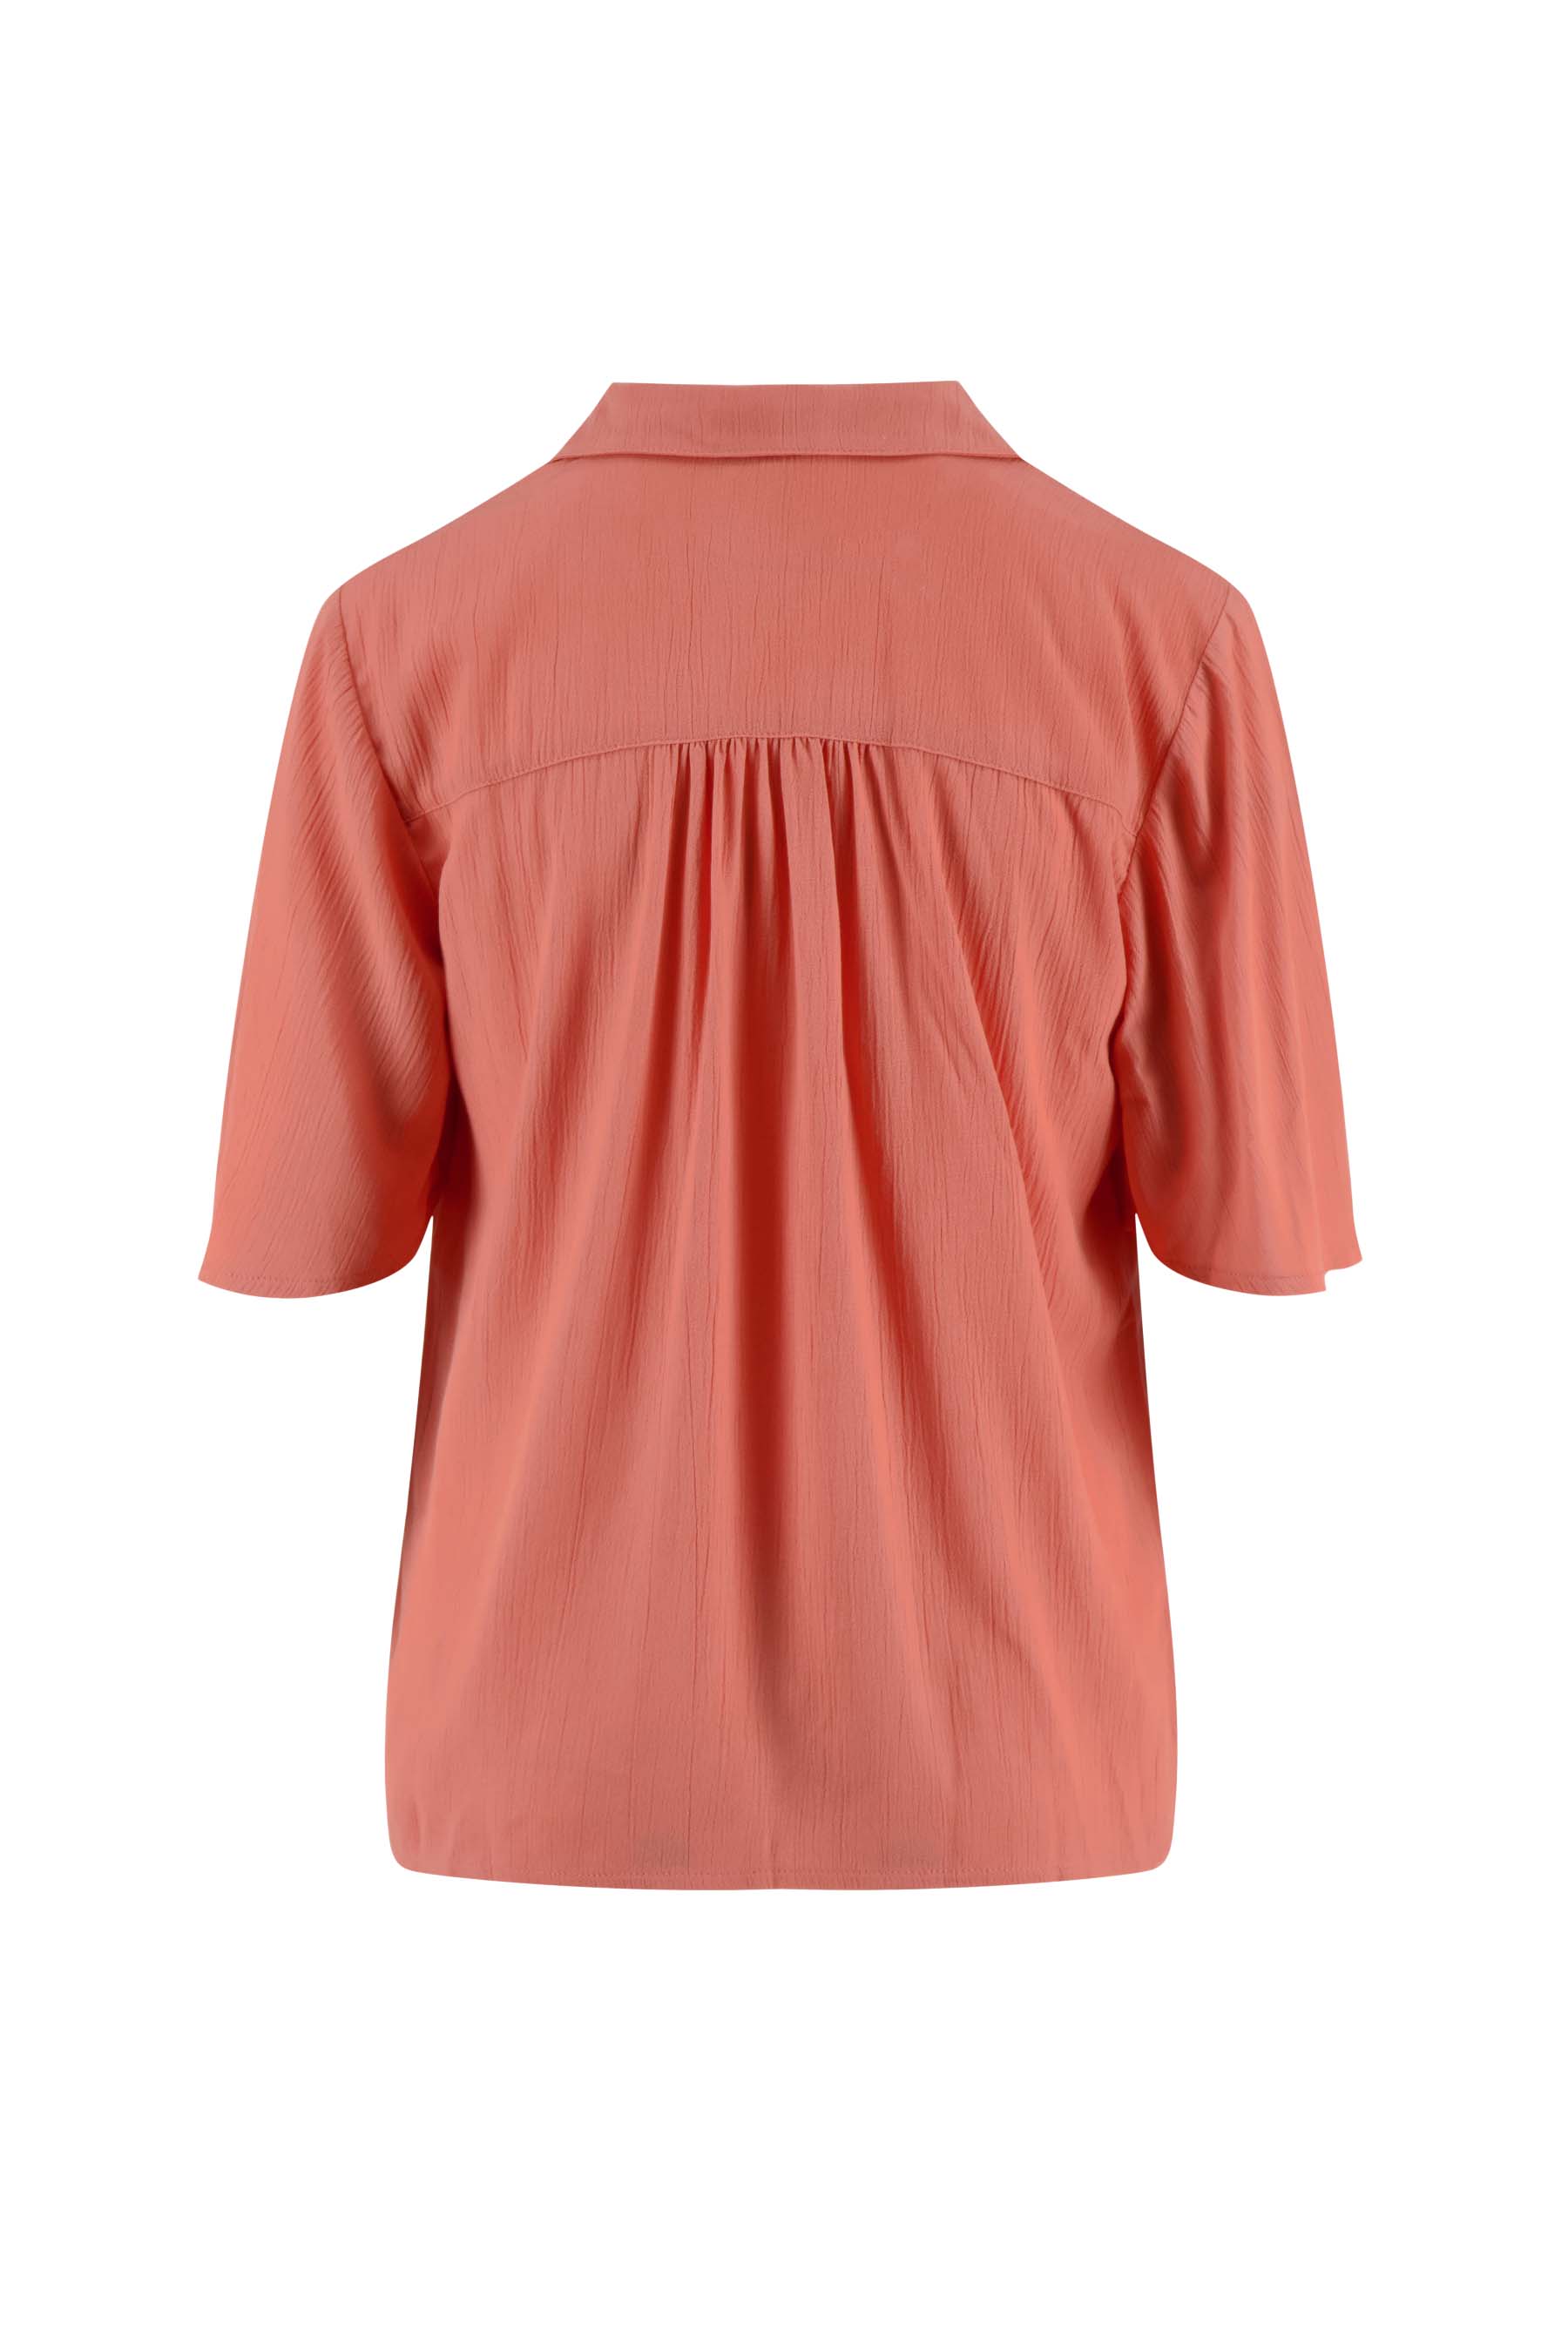 Blouse met korte mouw - Zusss blouse met korte mouw koraalroze 0304 045 7045 achter - 194